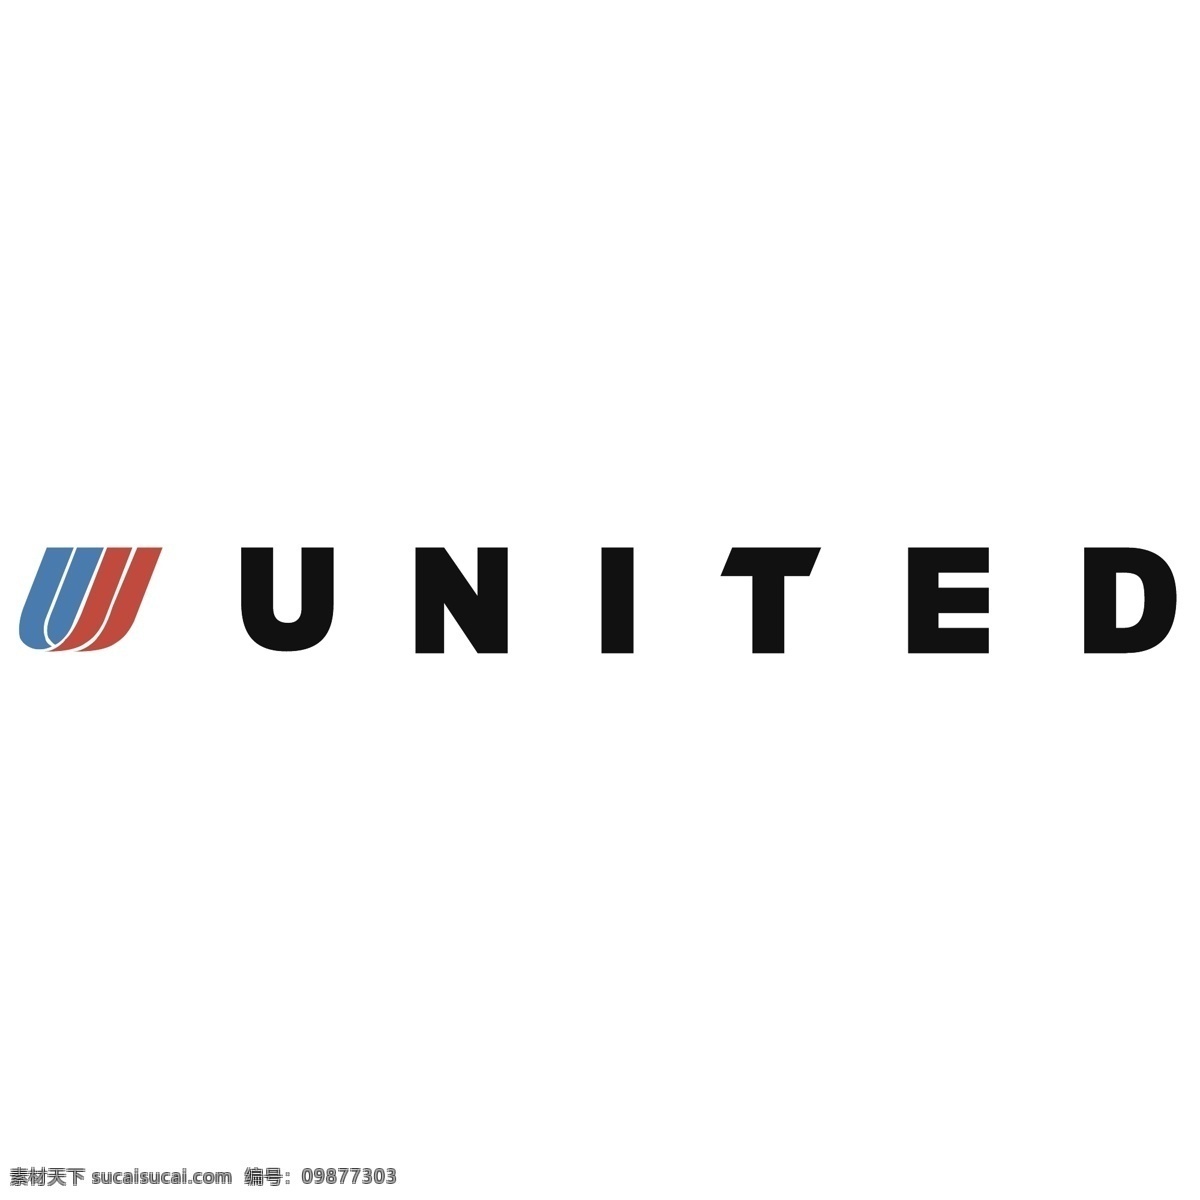 美国联合航空公司 免费 标志 联合航空公司 psd源文件 logo设计